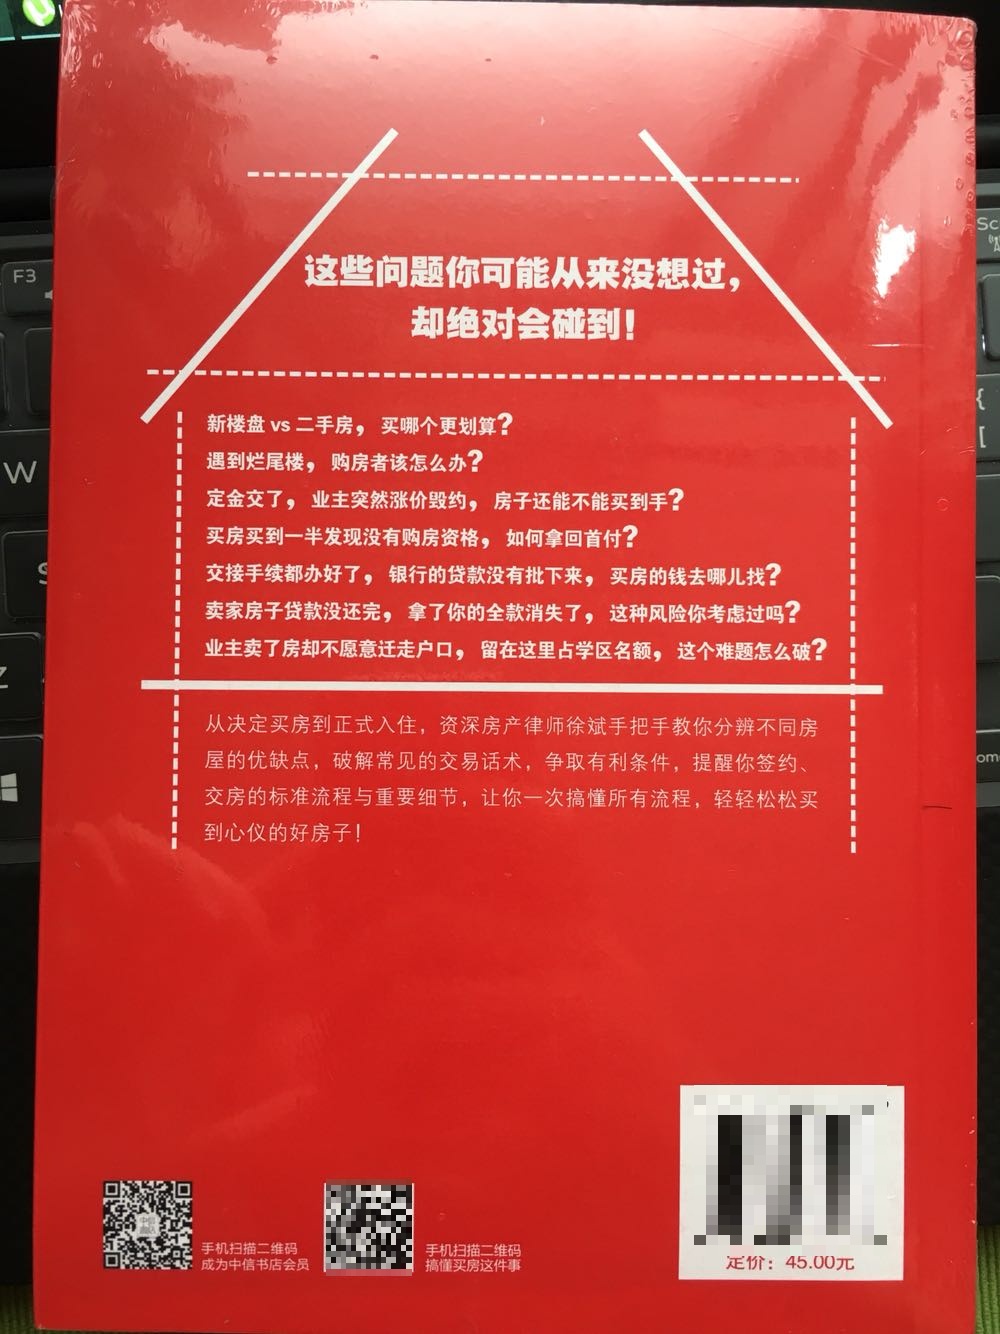 这本书是资深房产律师徐斌的最新著作，从决定买房到正式入住，他用简单易懂的语言告诉我们关于买房的技巧和方法。非常实用的一本书，内容很丰富。